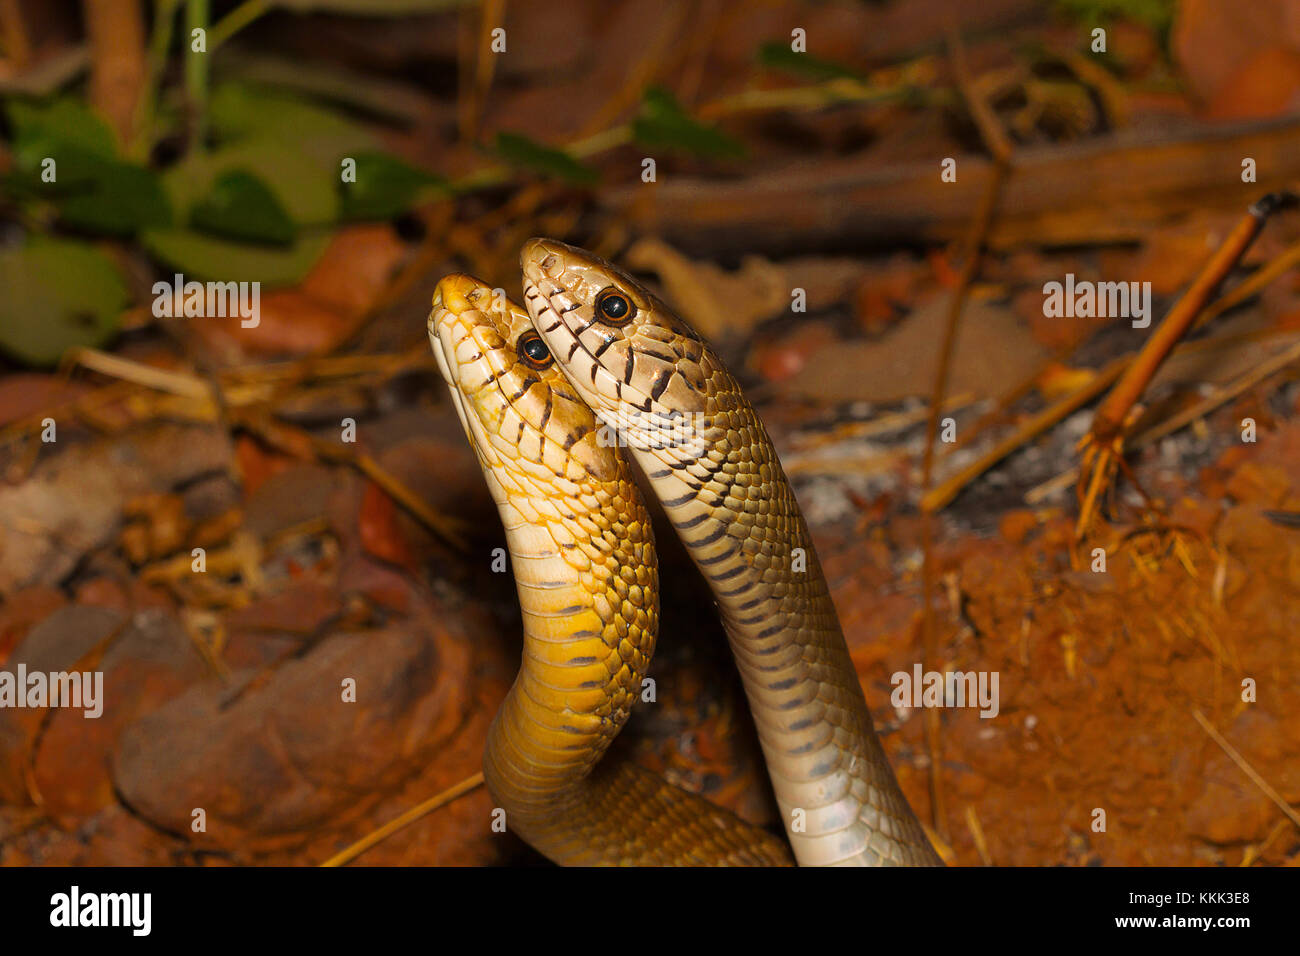 Deux serpents chez le rat mâle, dans une muqueuse Ptyas combattre. Aarey Milk Colony, Mumbai, Maharashtra, Inde Banque D'Images